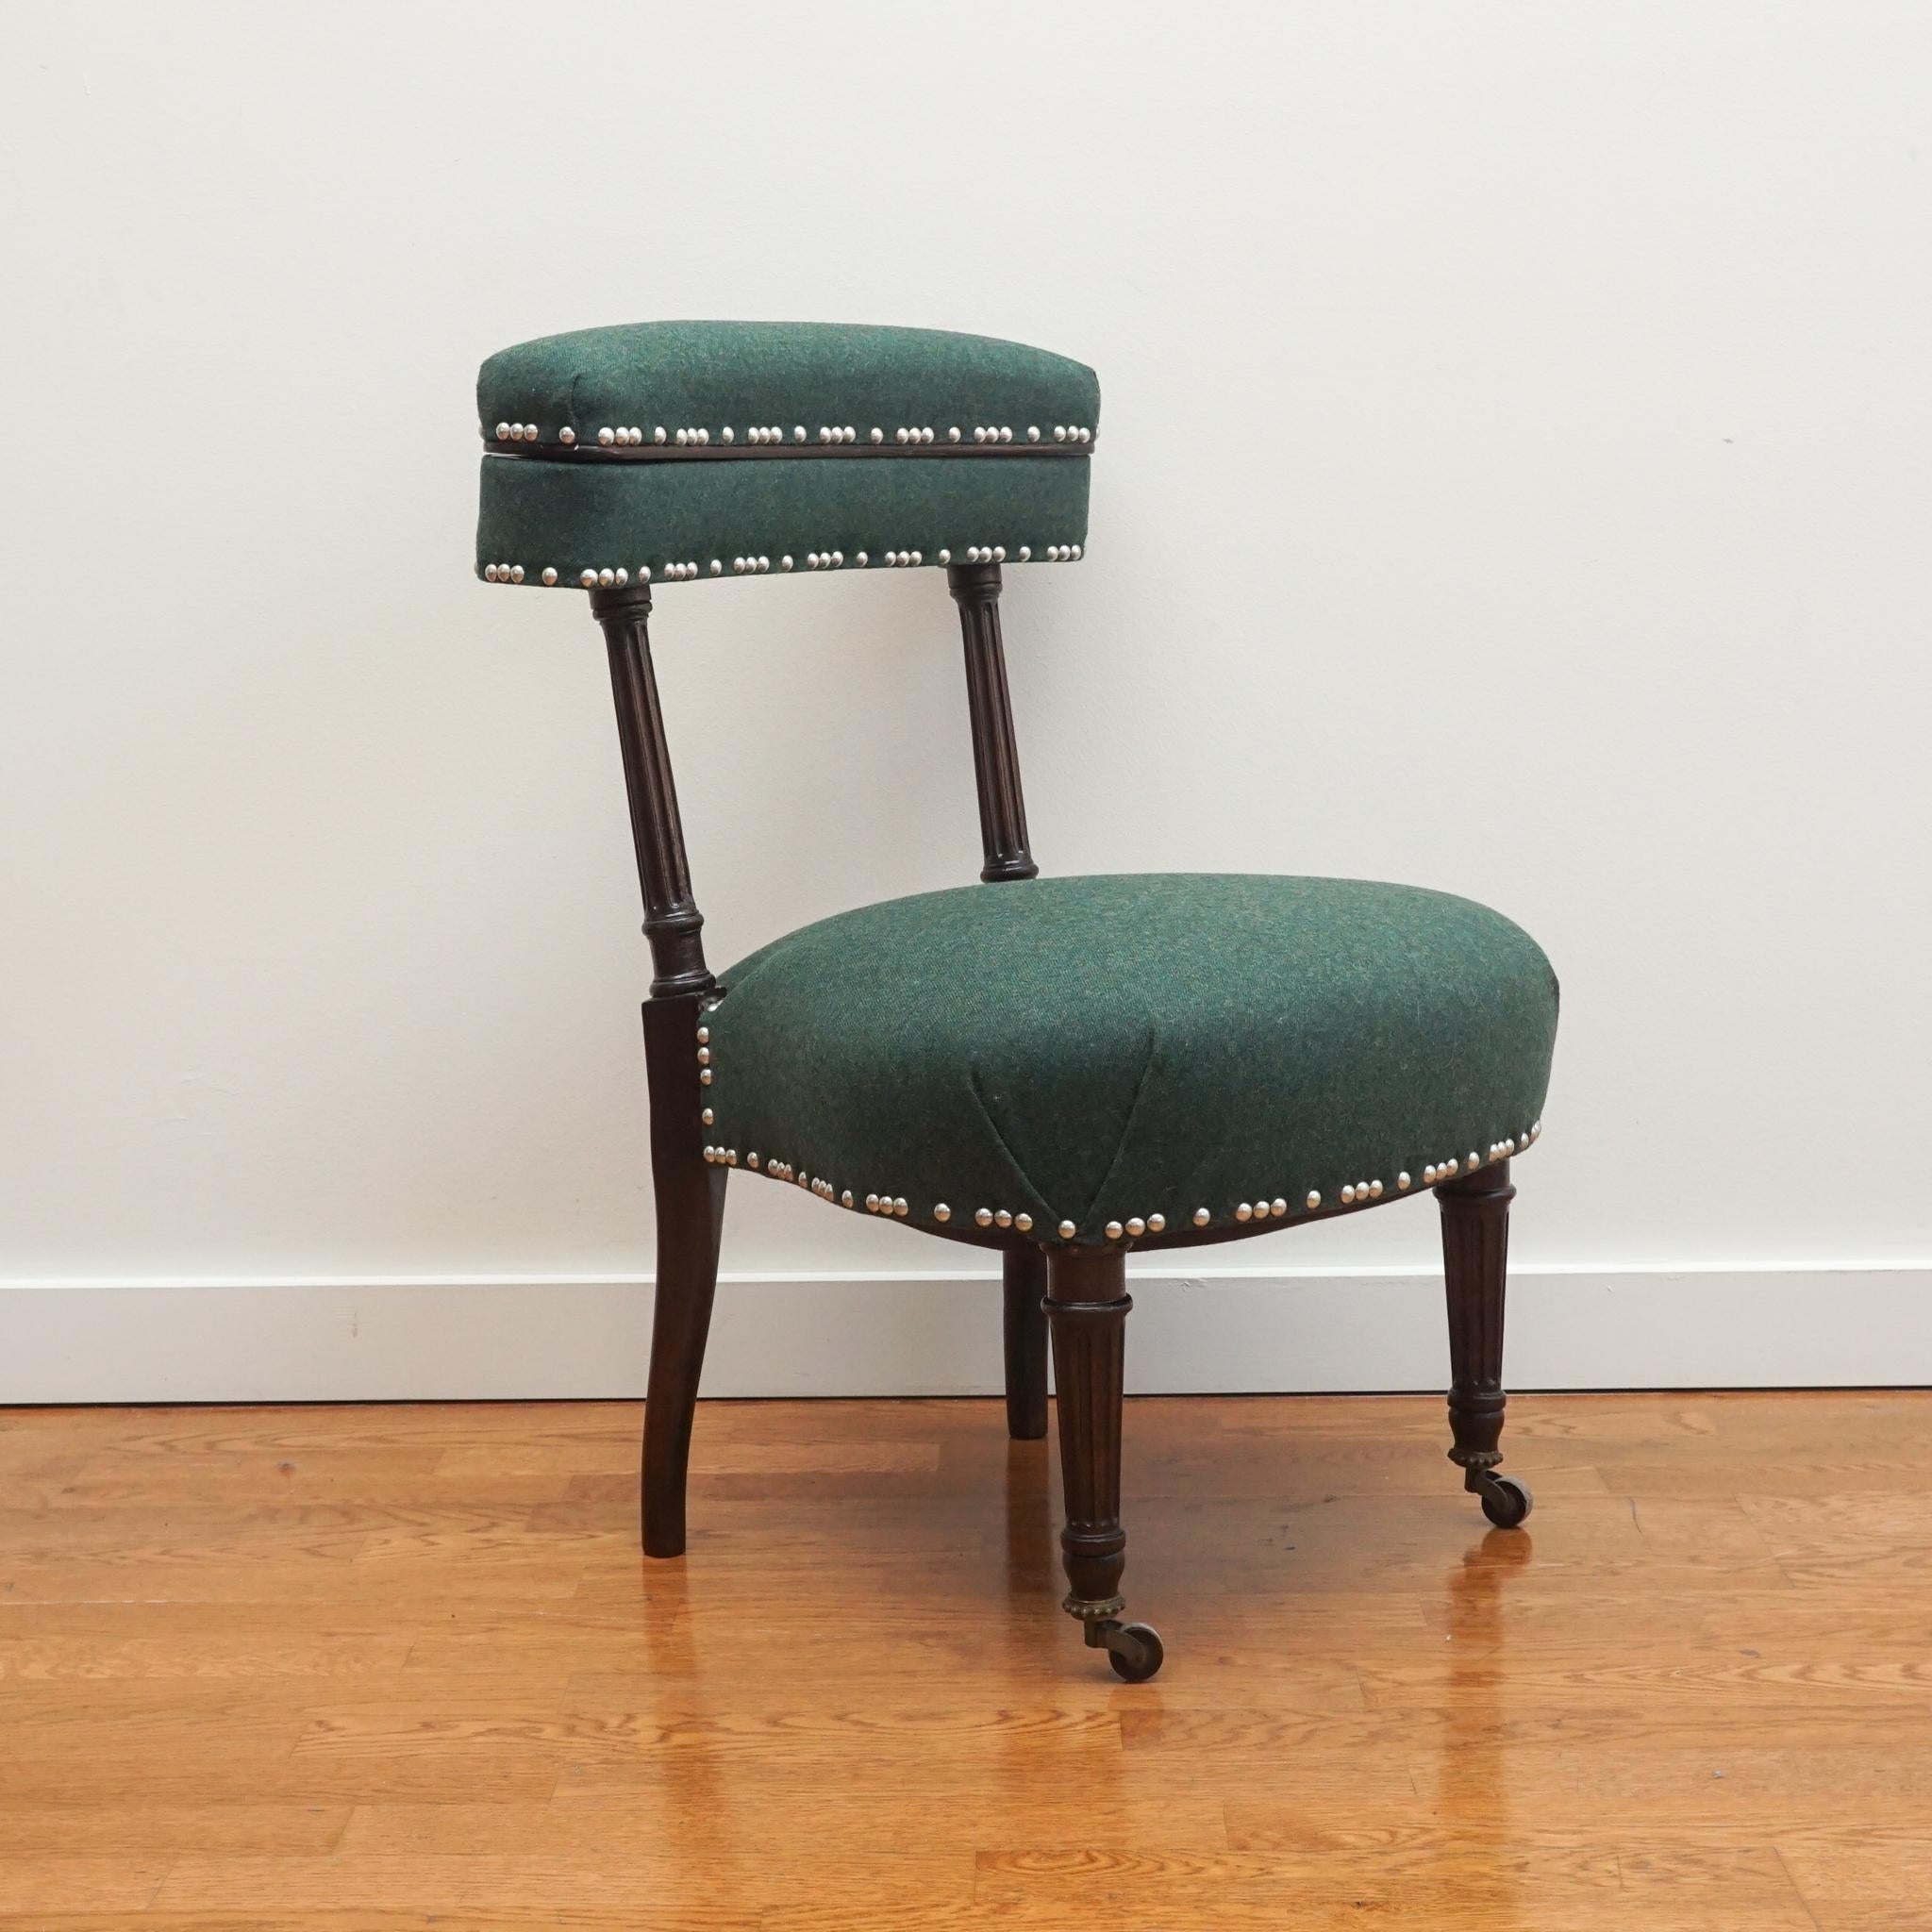 Dieser hübsche französische Dienerstuhl im Louis-XVI-Stil wurde vollständig restauriert.  Der mit dunklem Holz veredelte Stuhl ist mit einem grünen Coraggio-Stoff aus venezianischer Wolle/Nylon-Mischung gepolstert und mit einem Nagelkopf aus